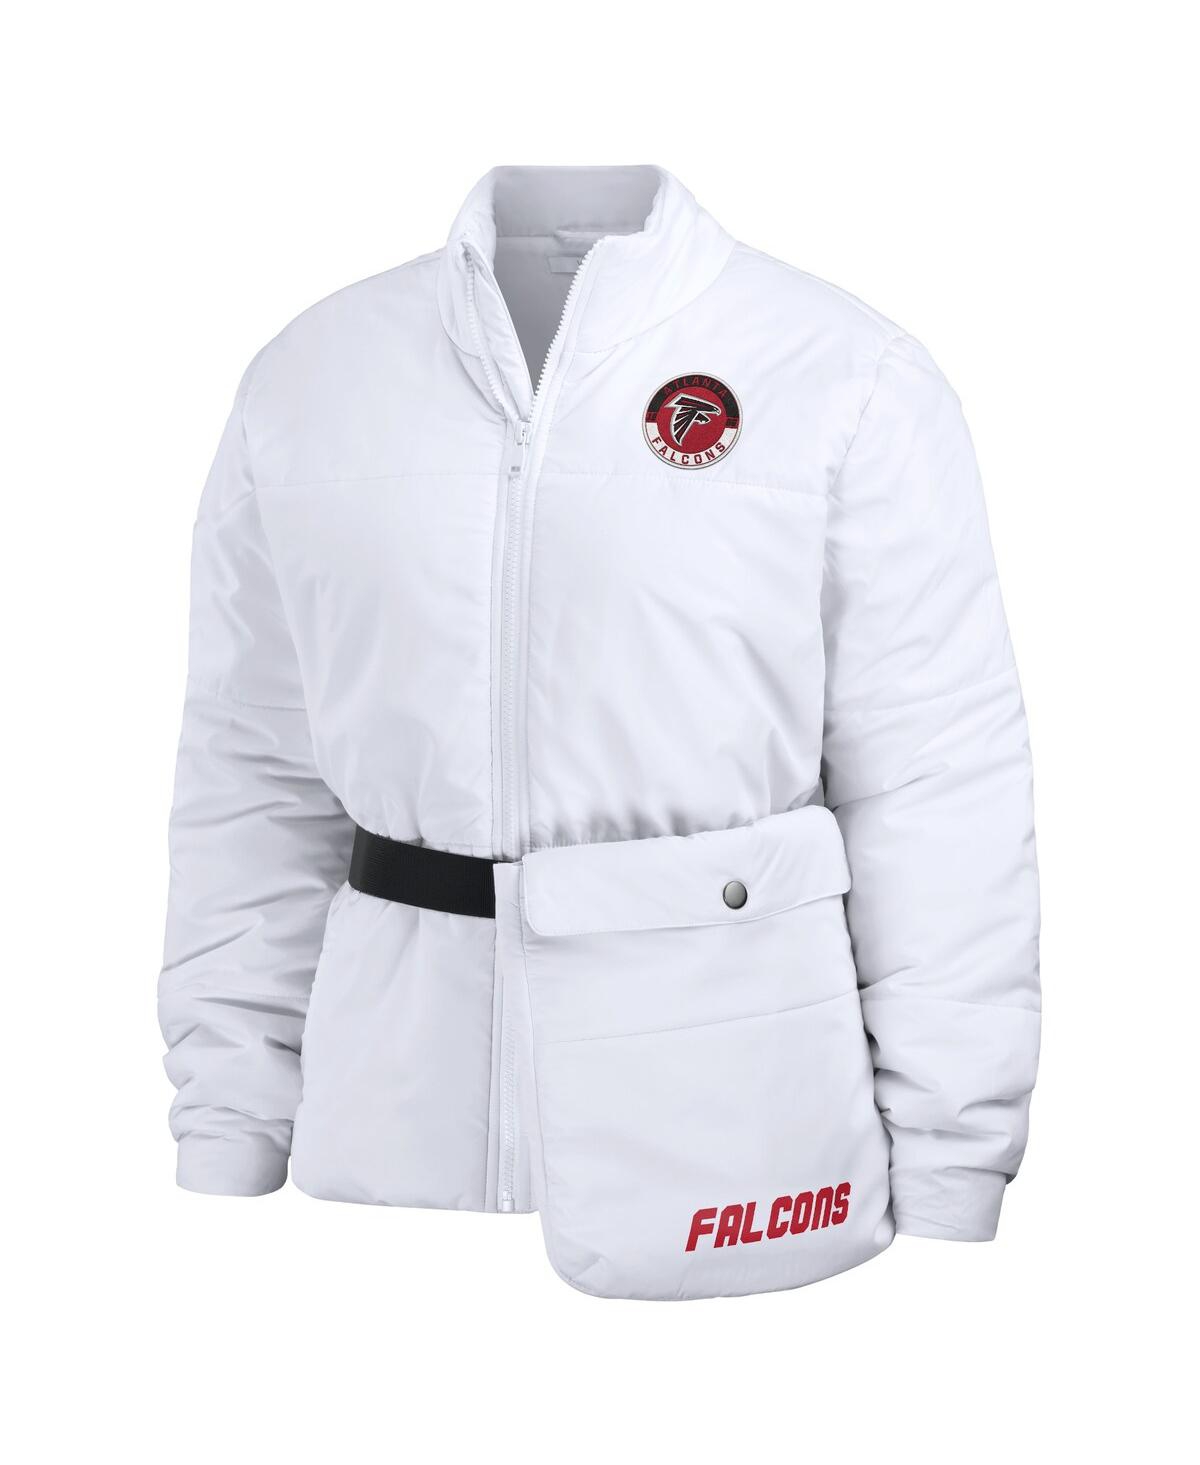 Shop Wear By Erin Andrews Women's  White Atlanta Falcons Packaway Full-zip Puffer Jacket